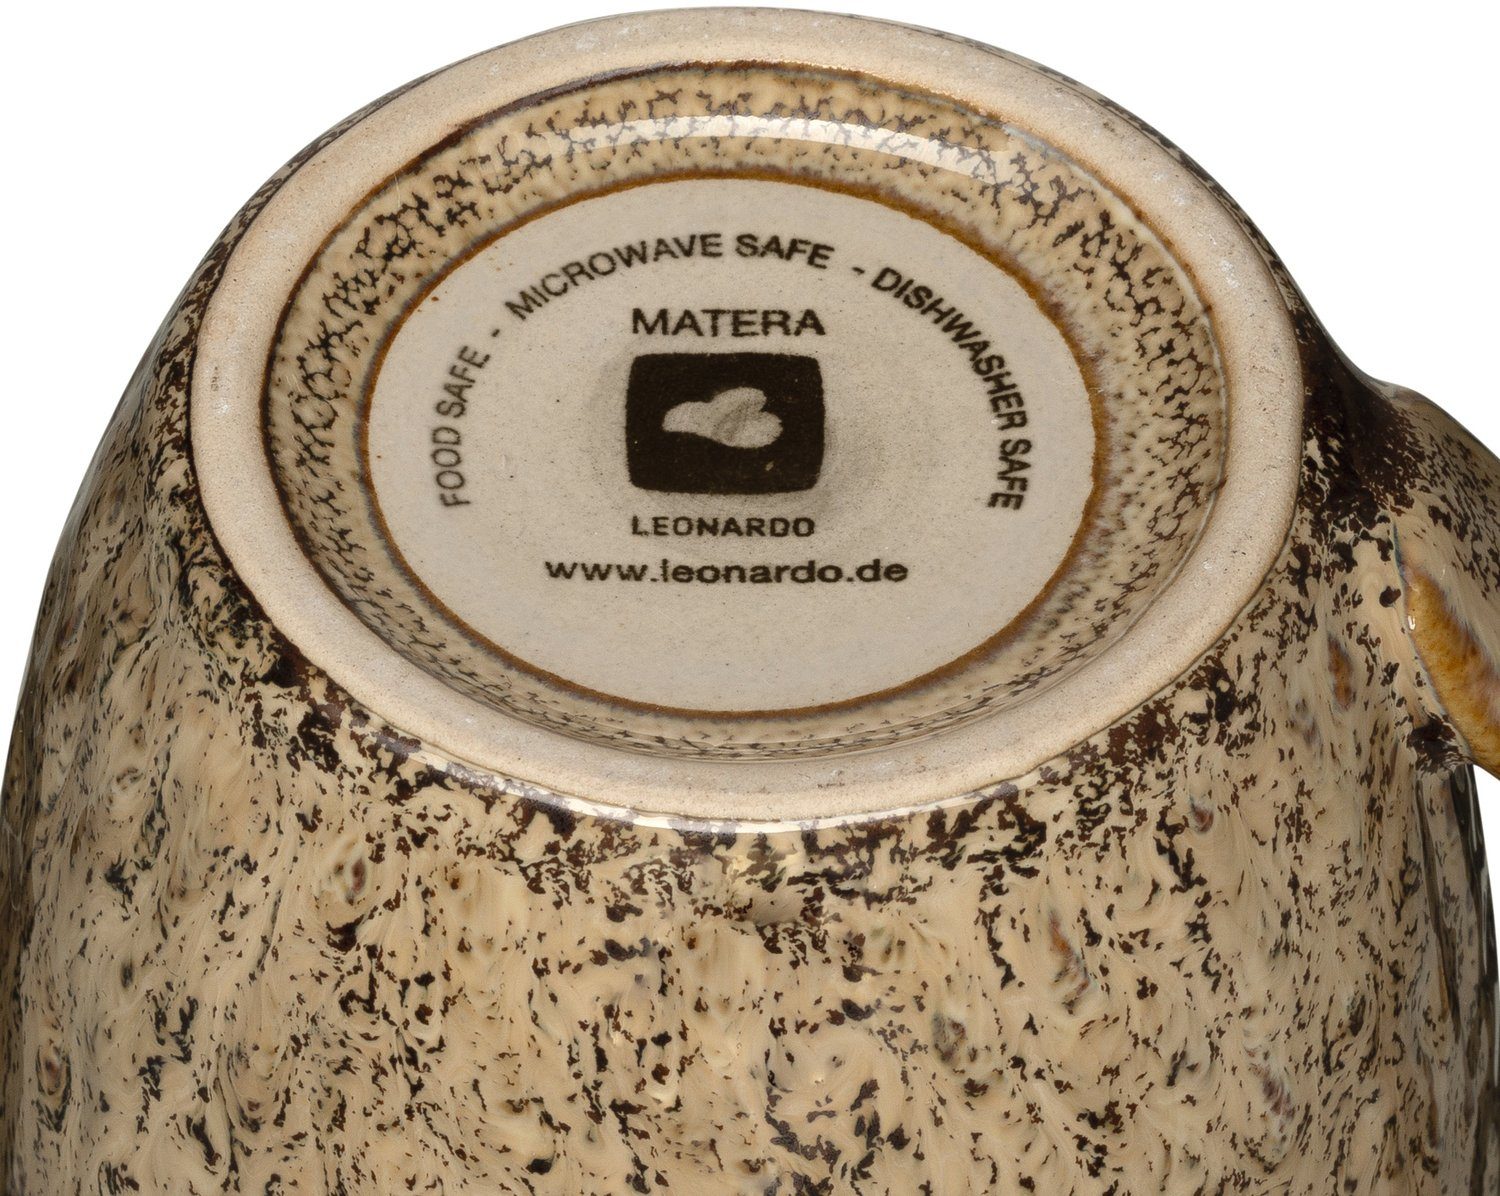 Matera, ml, 430 LEONARDO sand Becher 6-teilig Keramik,